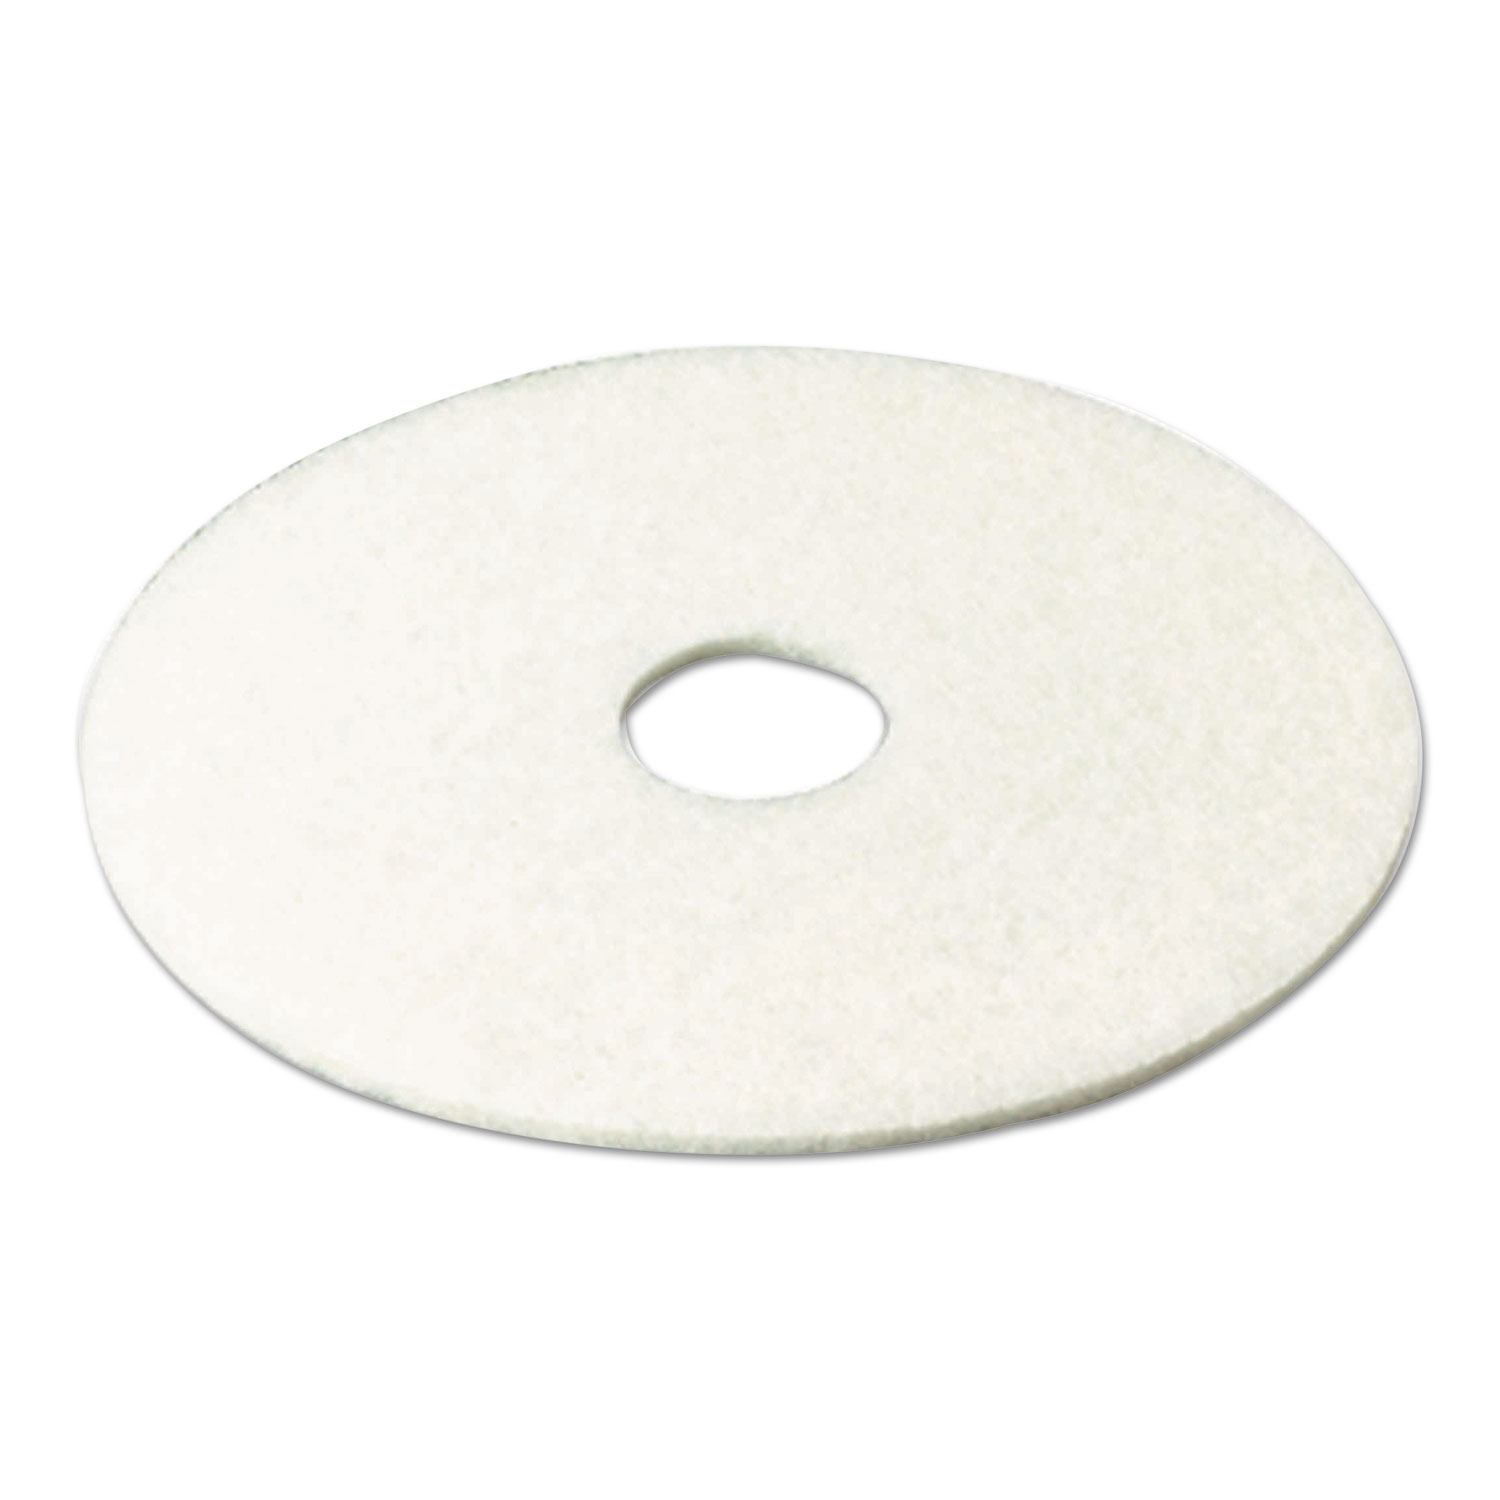 Super Polish Floor Pad 4100, 20 Diameter, White, 5/Carton